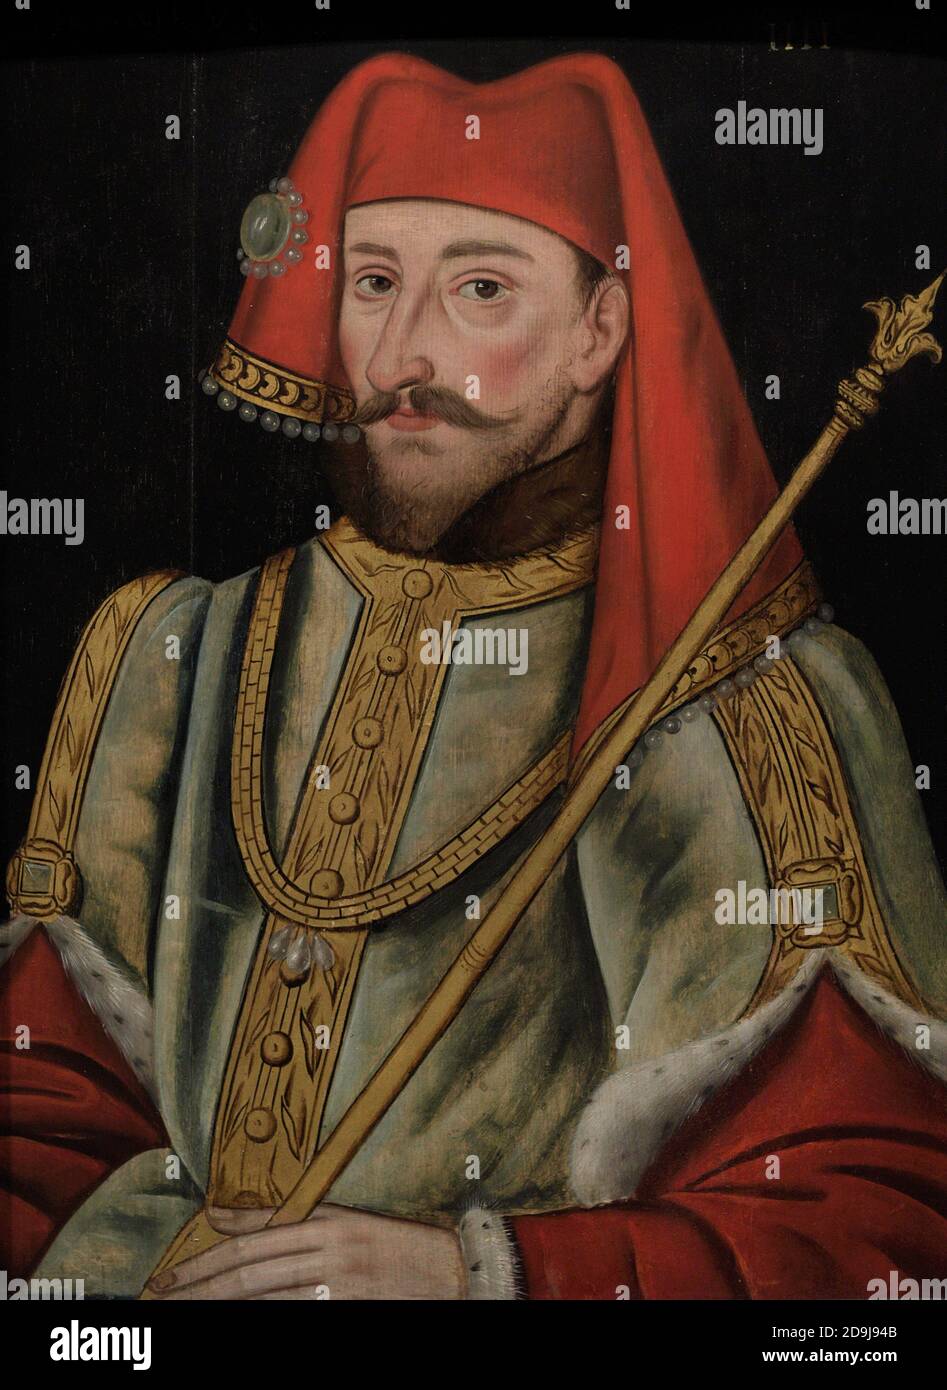 Enrique IV Rey de Inglaterra (1367-1413). Retrato de un artista no identificado. Aceite en el panel, 1597-1618. Galería Nacional de Retratos. Londres, Inglaterra, Reino Unido. Foto de stock